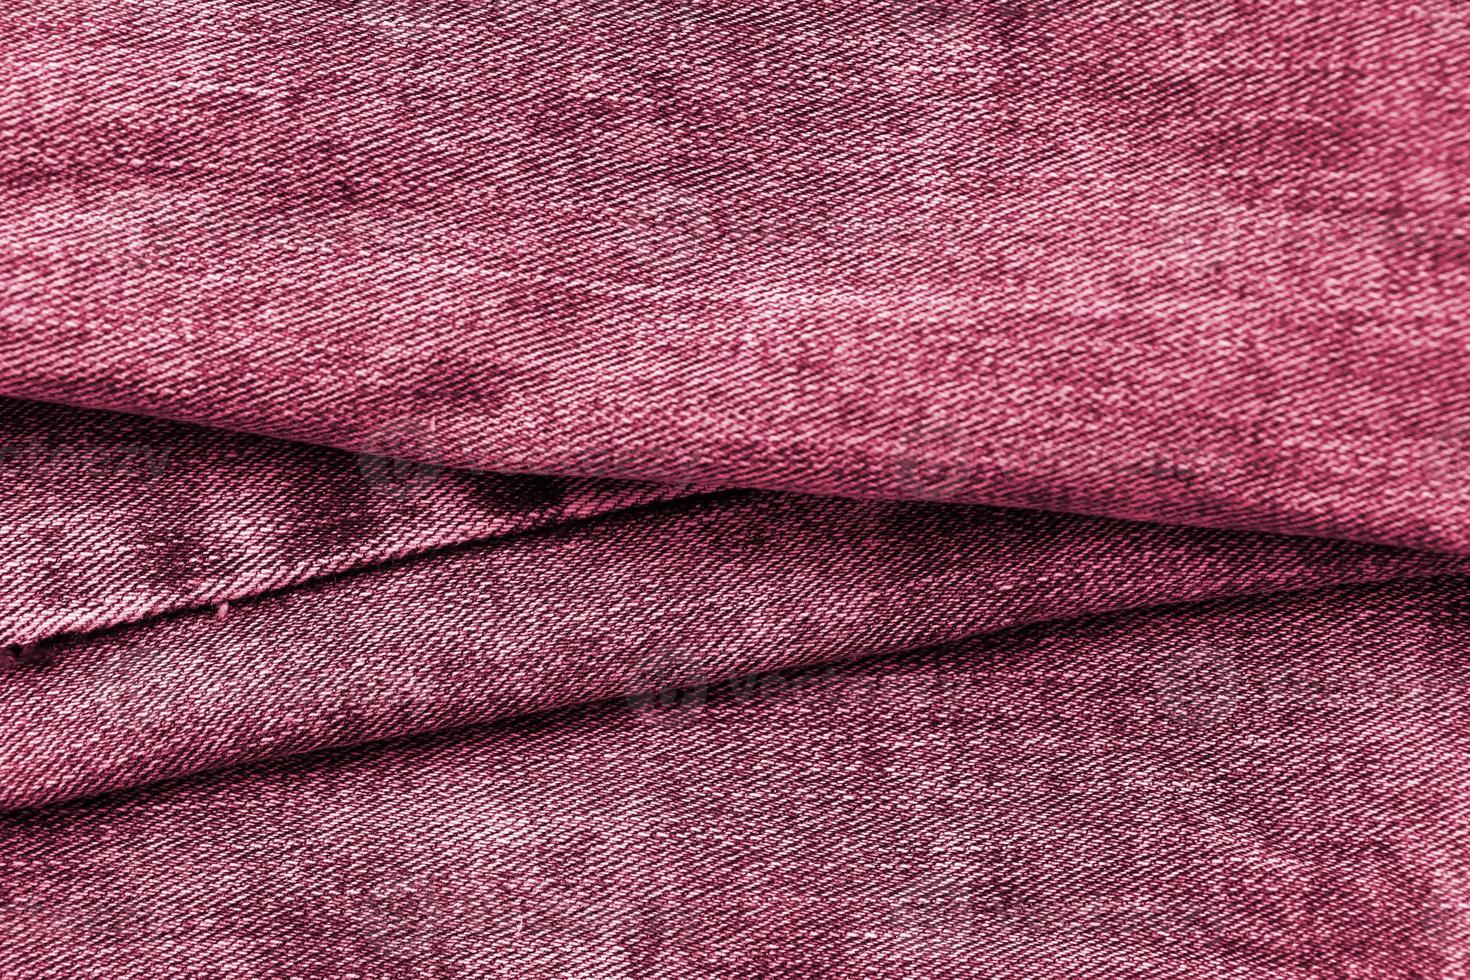 detaillierte abstrakte Textur aus dunkelblauem Jeansstoff. Hintergrundbild eines alten gebrauchten Denim-Hosen-Stoffbildes, getönt in Viva Magenta, Farbe des Jahres 2023 foto